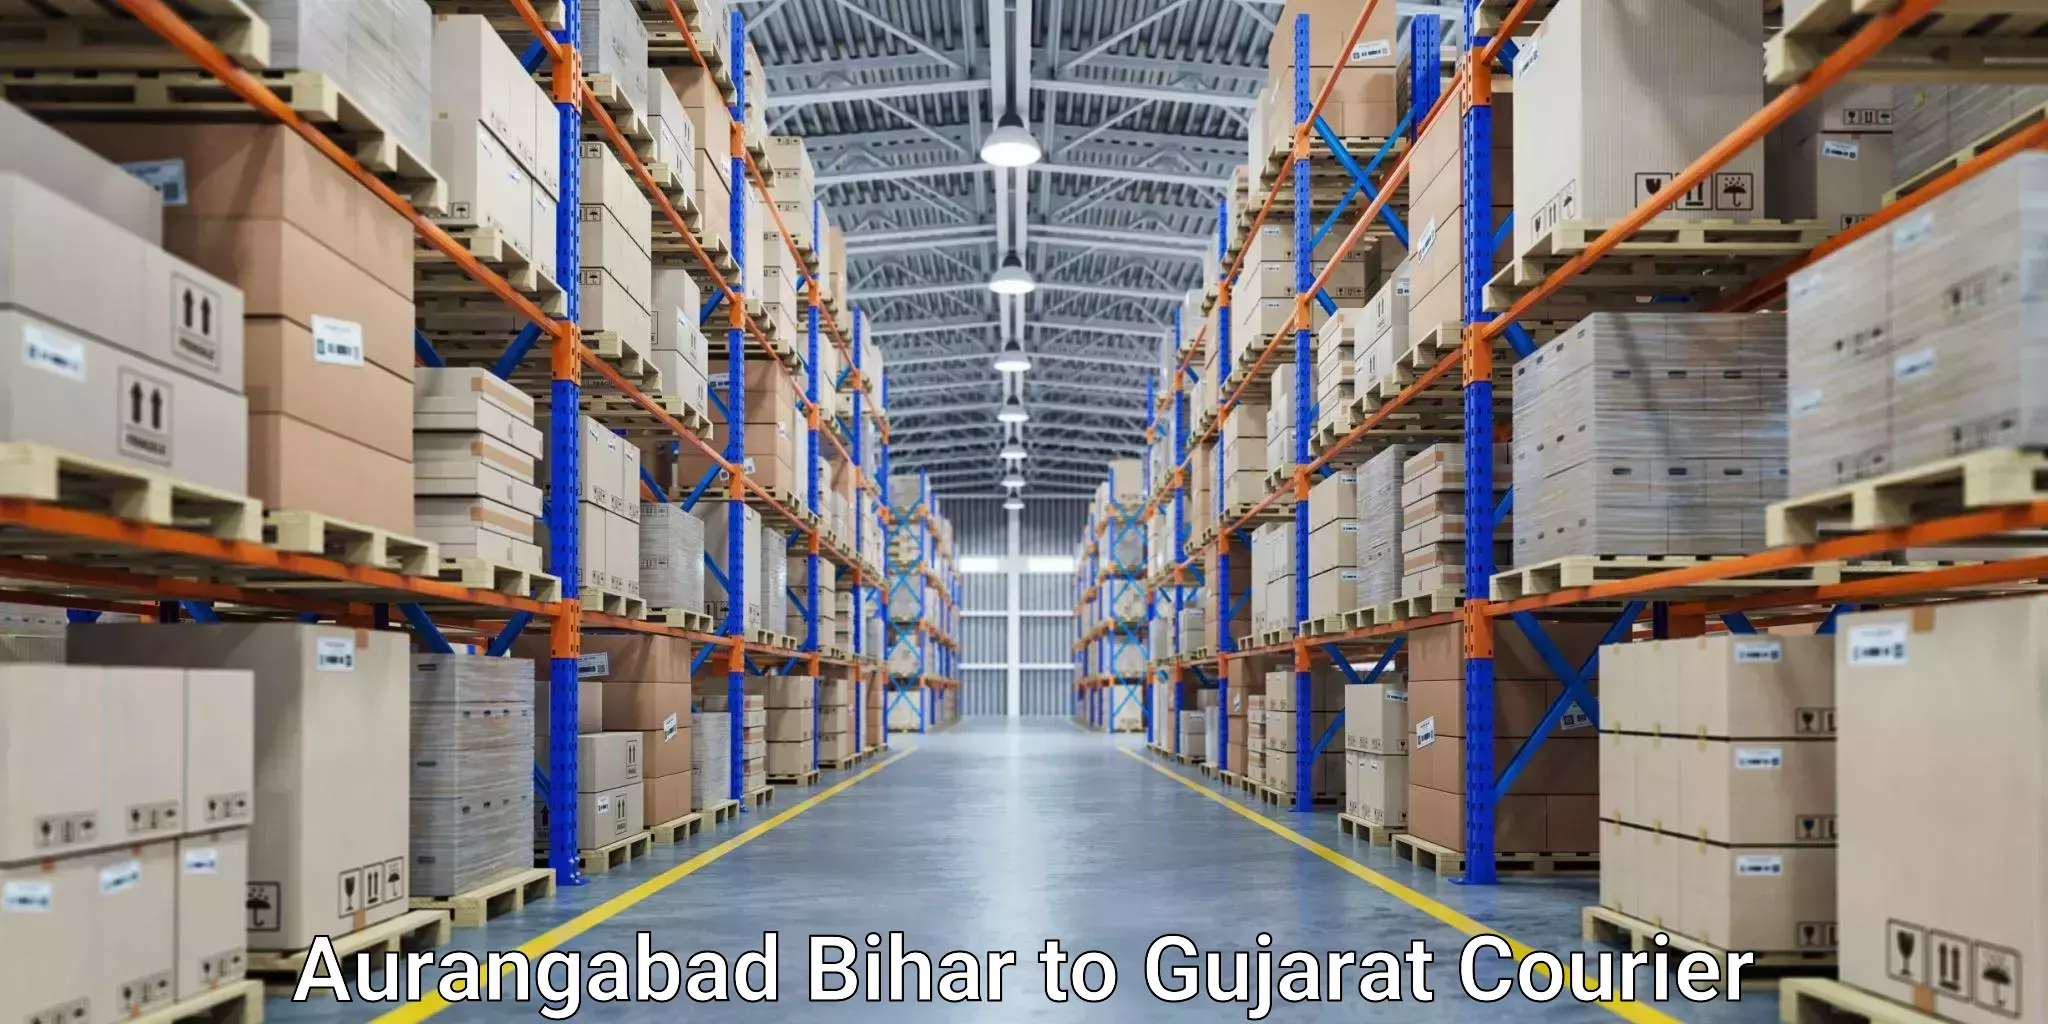 Customer-focused courier Aurangabad Bihar to IIIT Surat